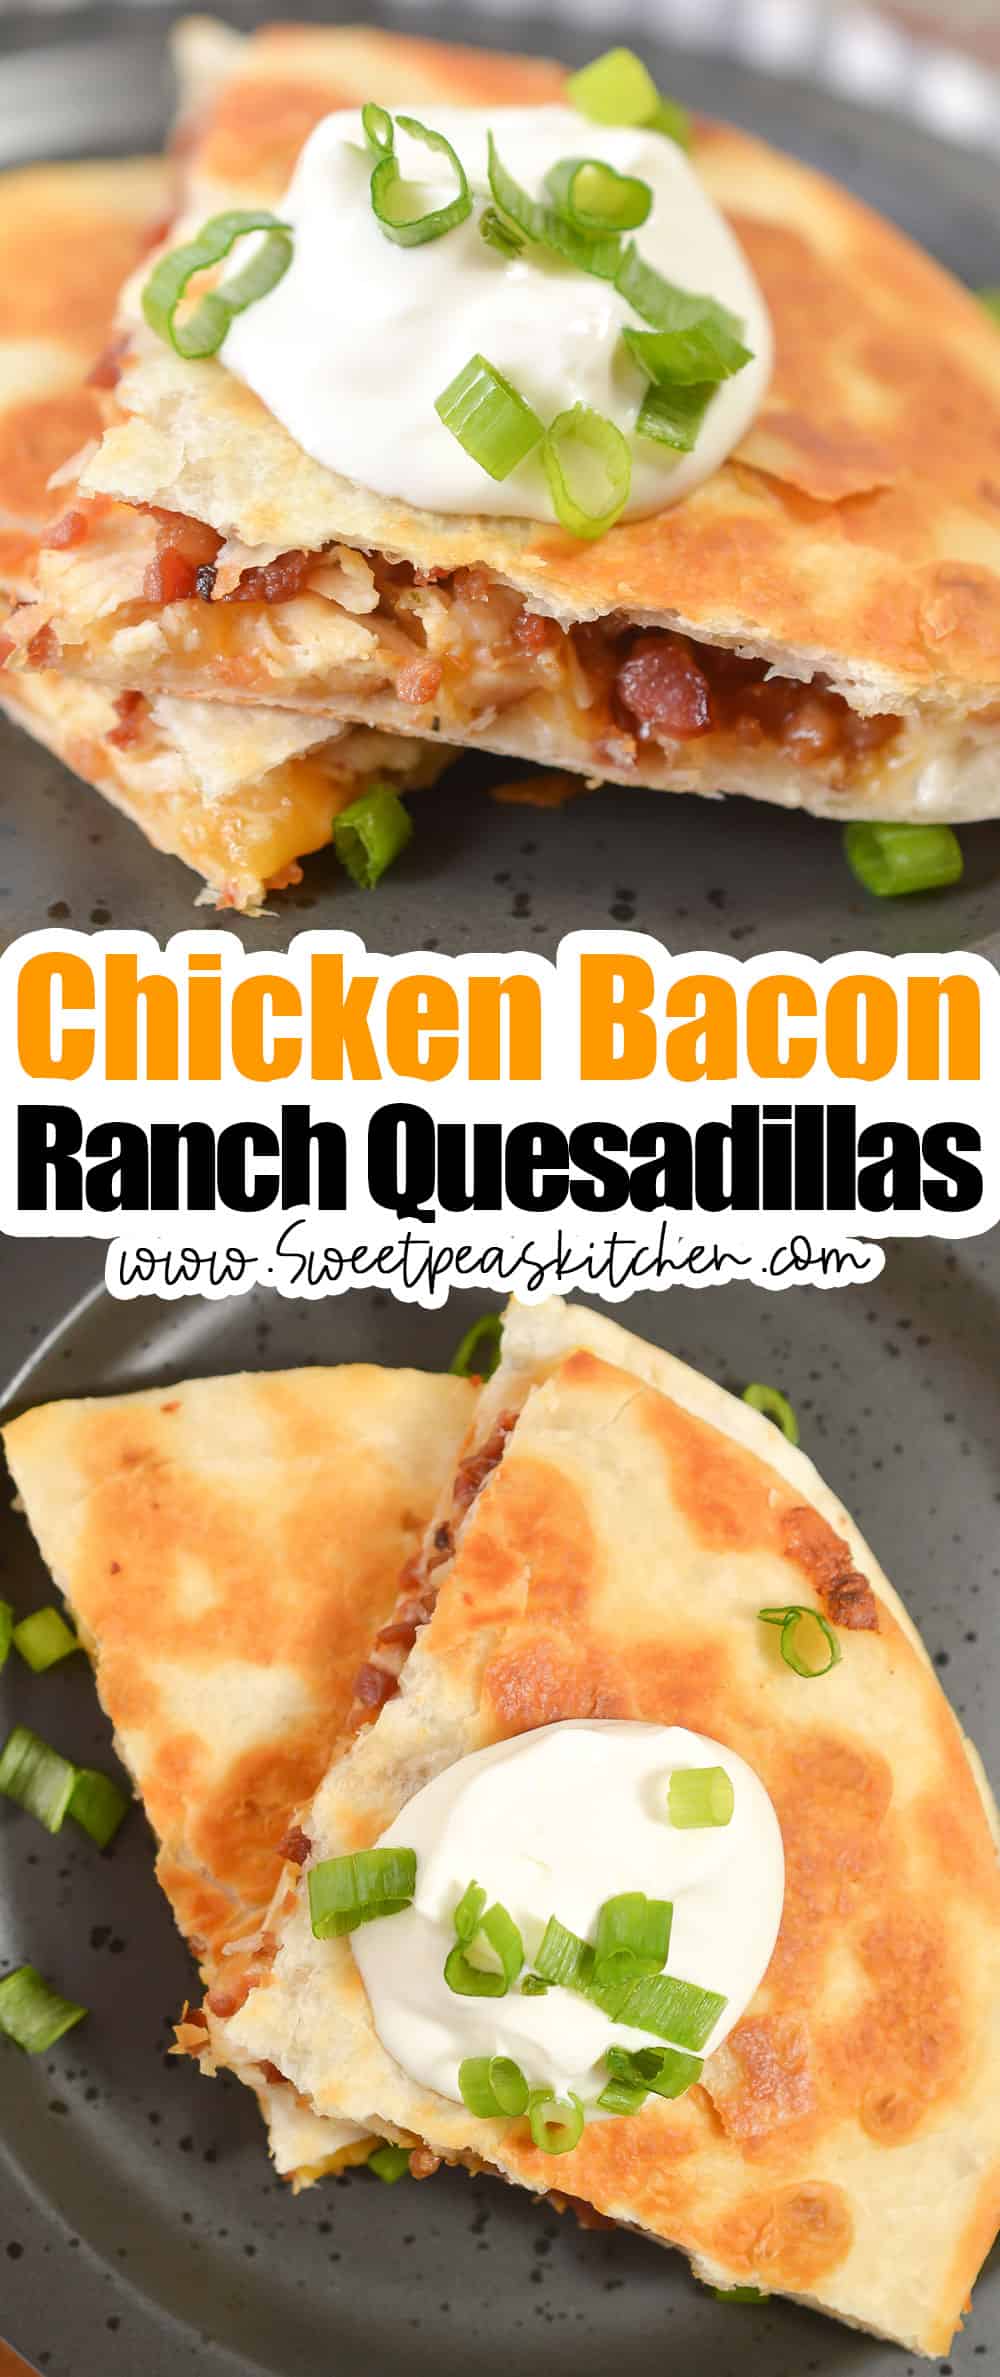 Chicken Bacon Ranch Quesadillas